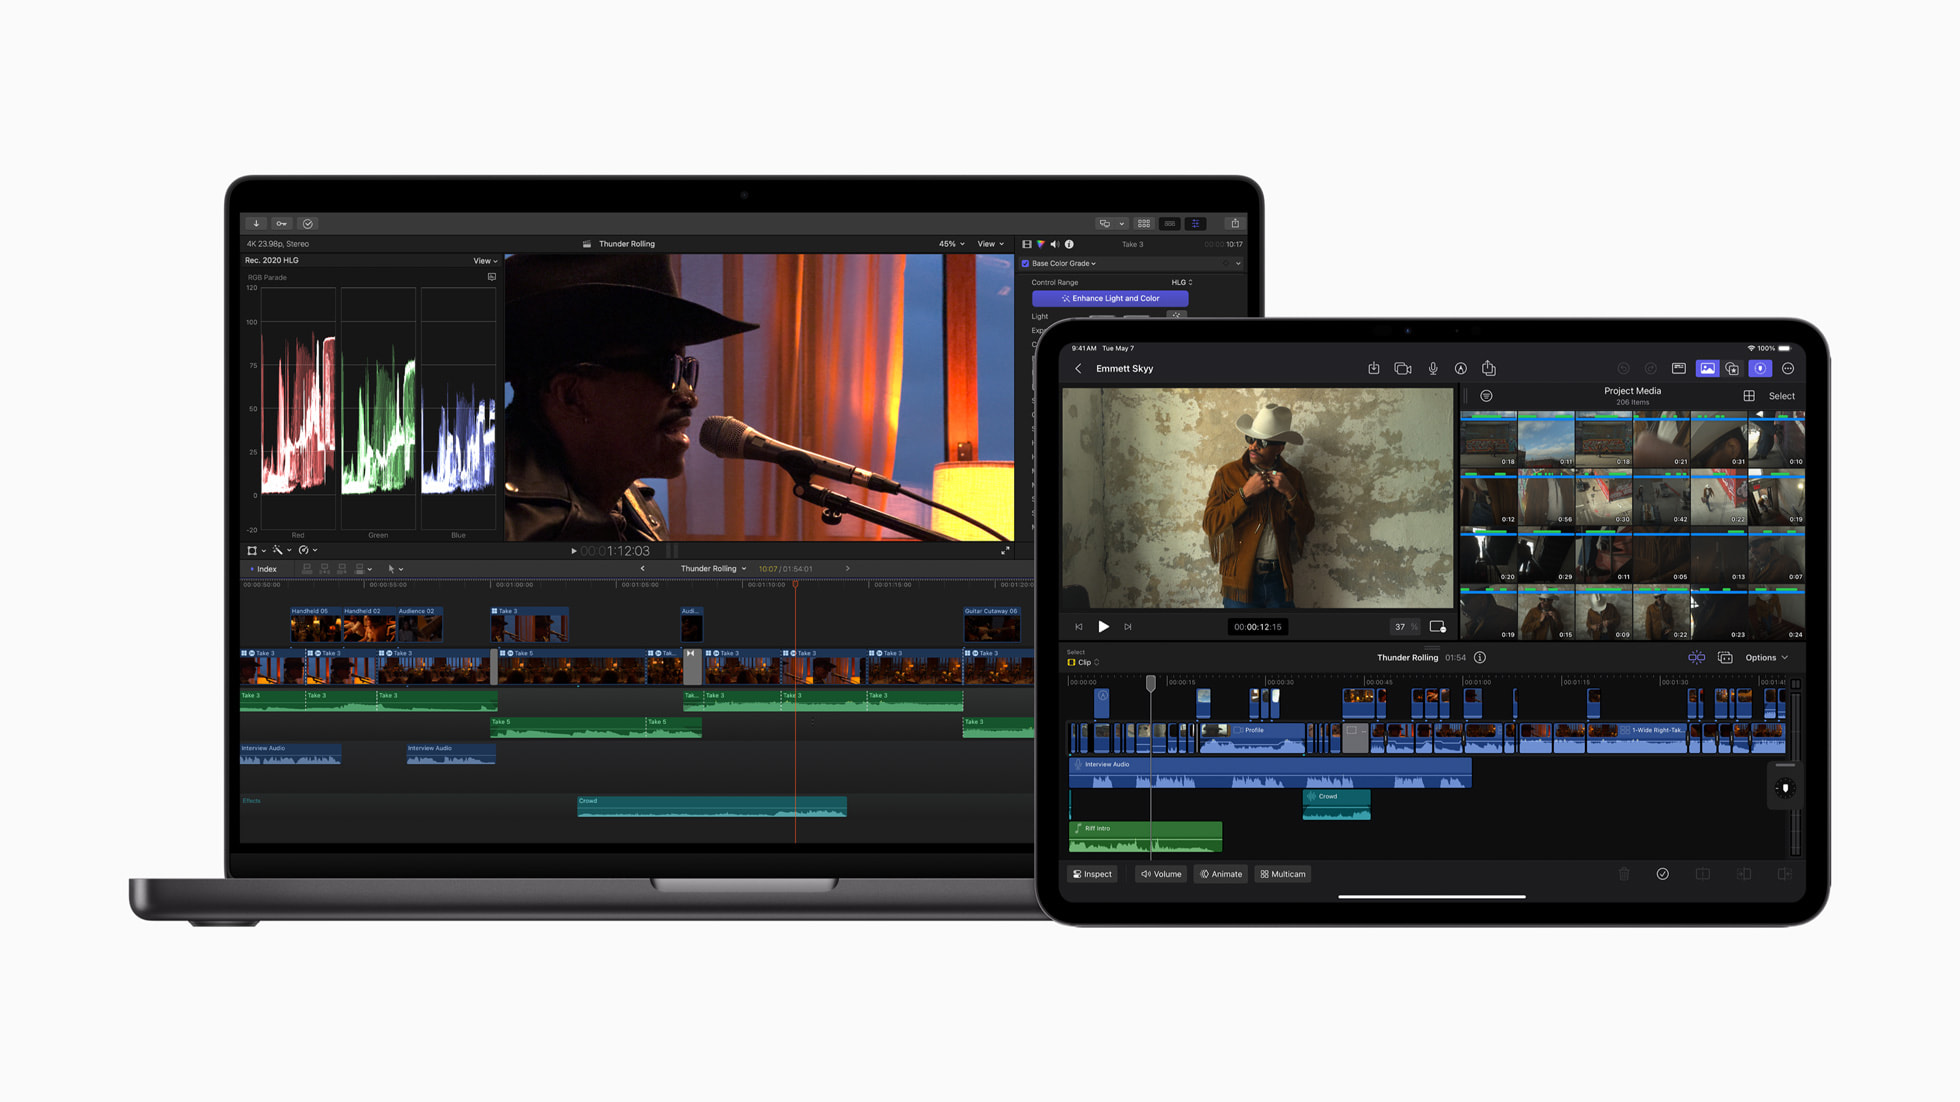 Apple releases Final Cut Pro for iPad 2 alongside Final Cut Pro 10.8 for Mac  - 9to5Mac